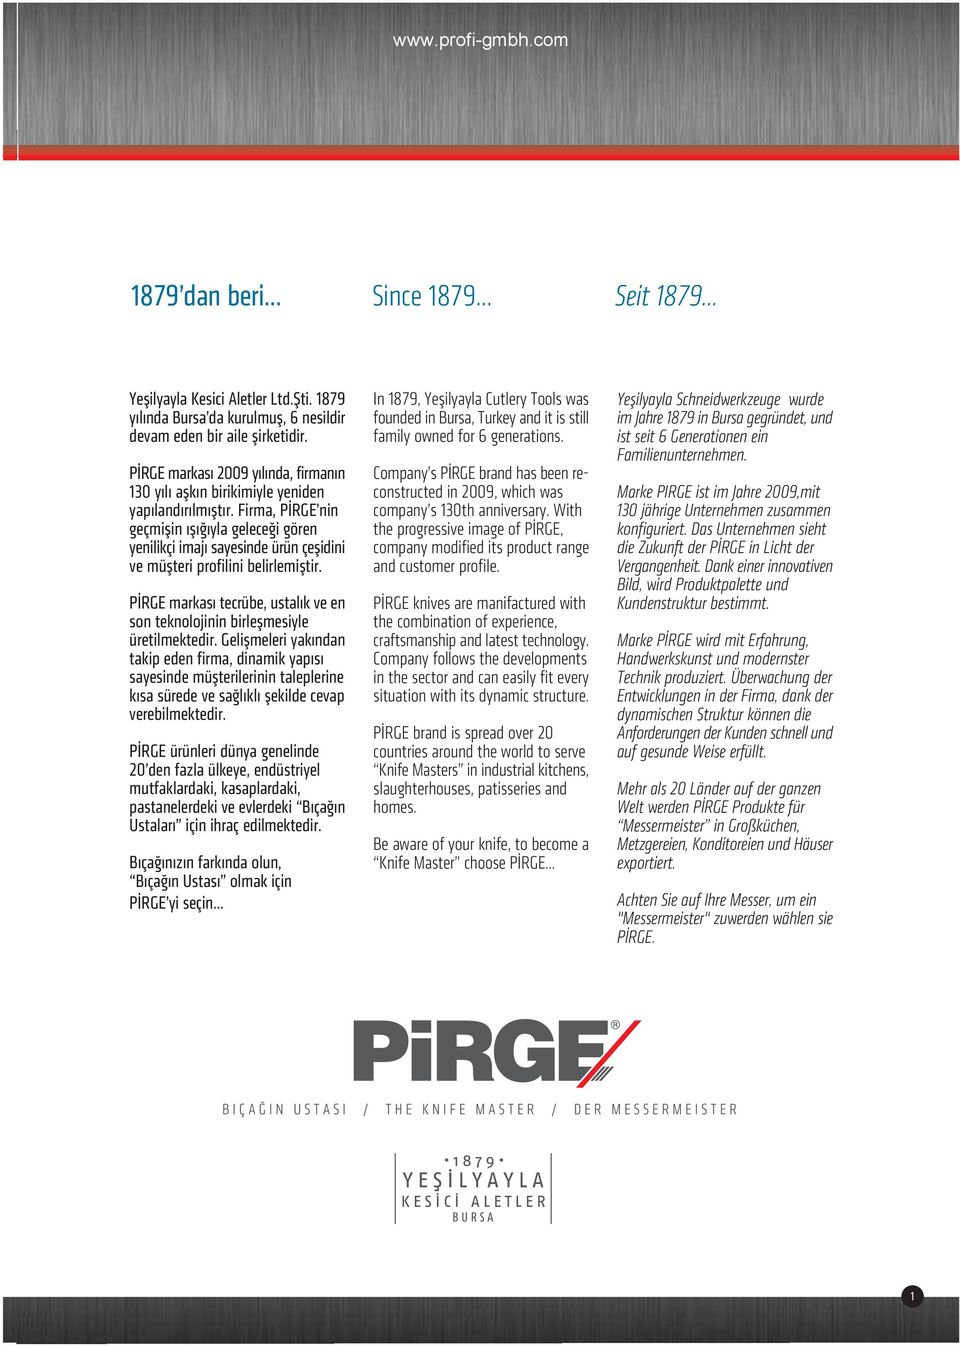 Firma, PİRGE nin geçmişin ışığıyla geleceği gören yenilikçi imajı sayesinde ürün çeşidini ve müşteri profilini belirlemiştir.